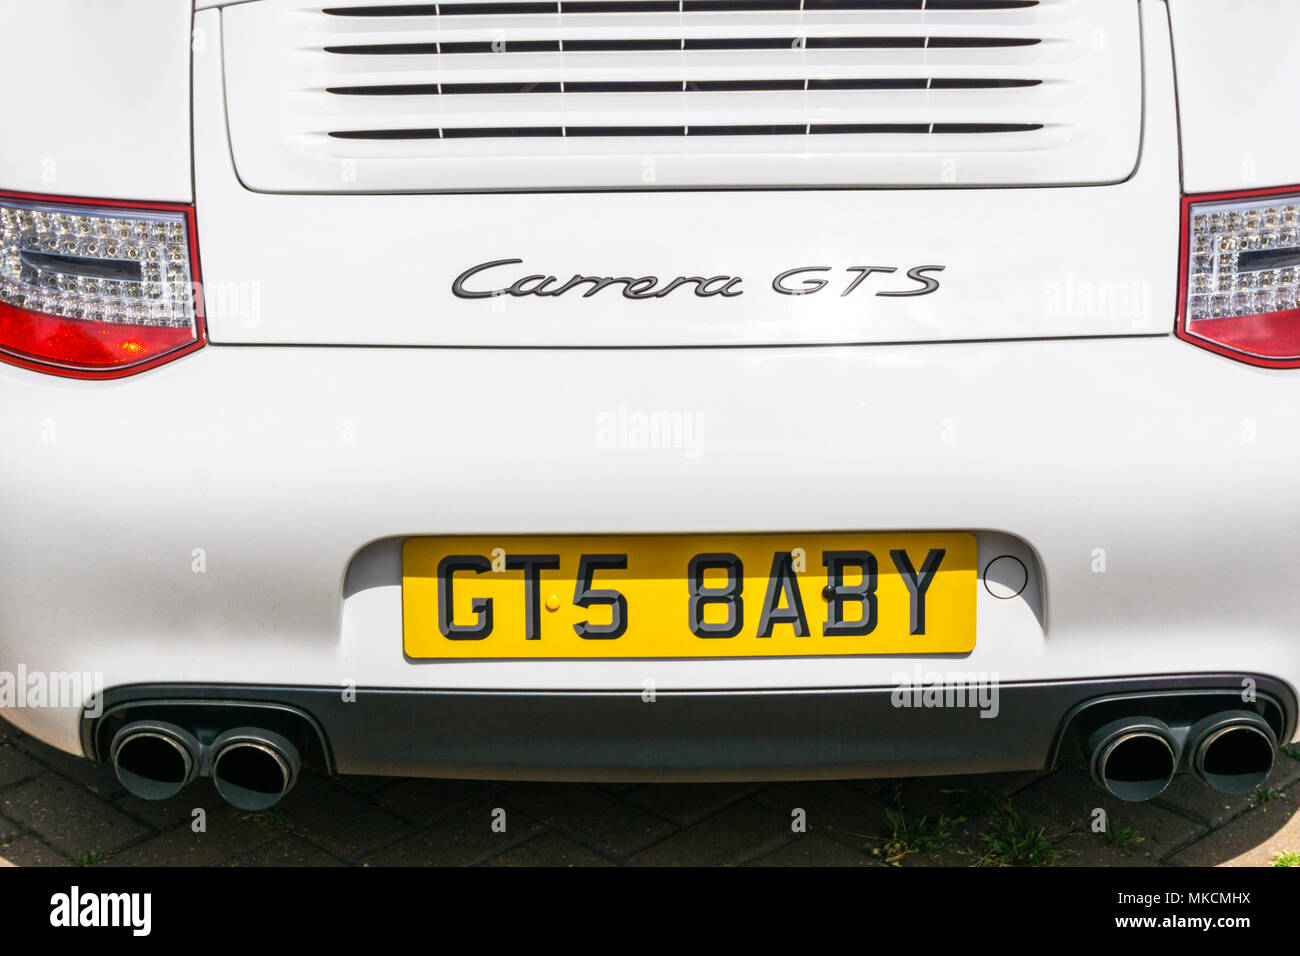 Ein Porsche Carrera GTS mit einem personalisierten Nummernschild, die effektiv liest GTS BABY. Stockfoto